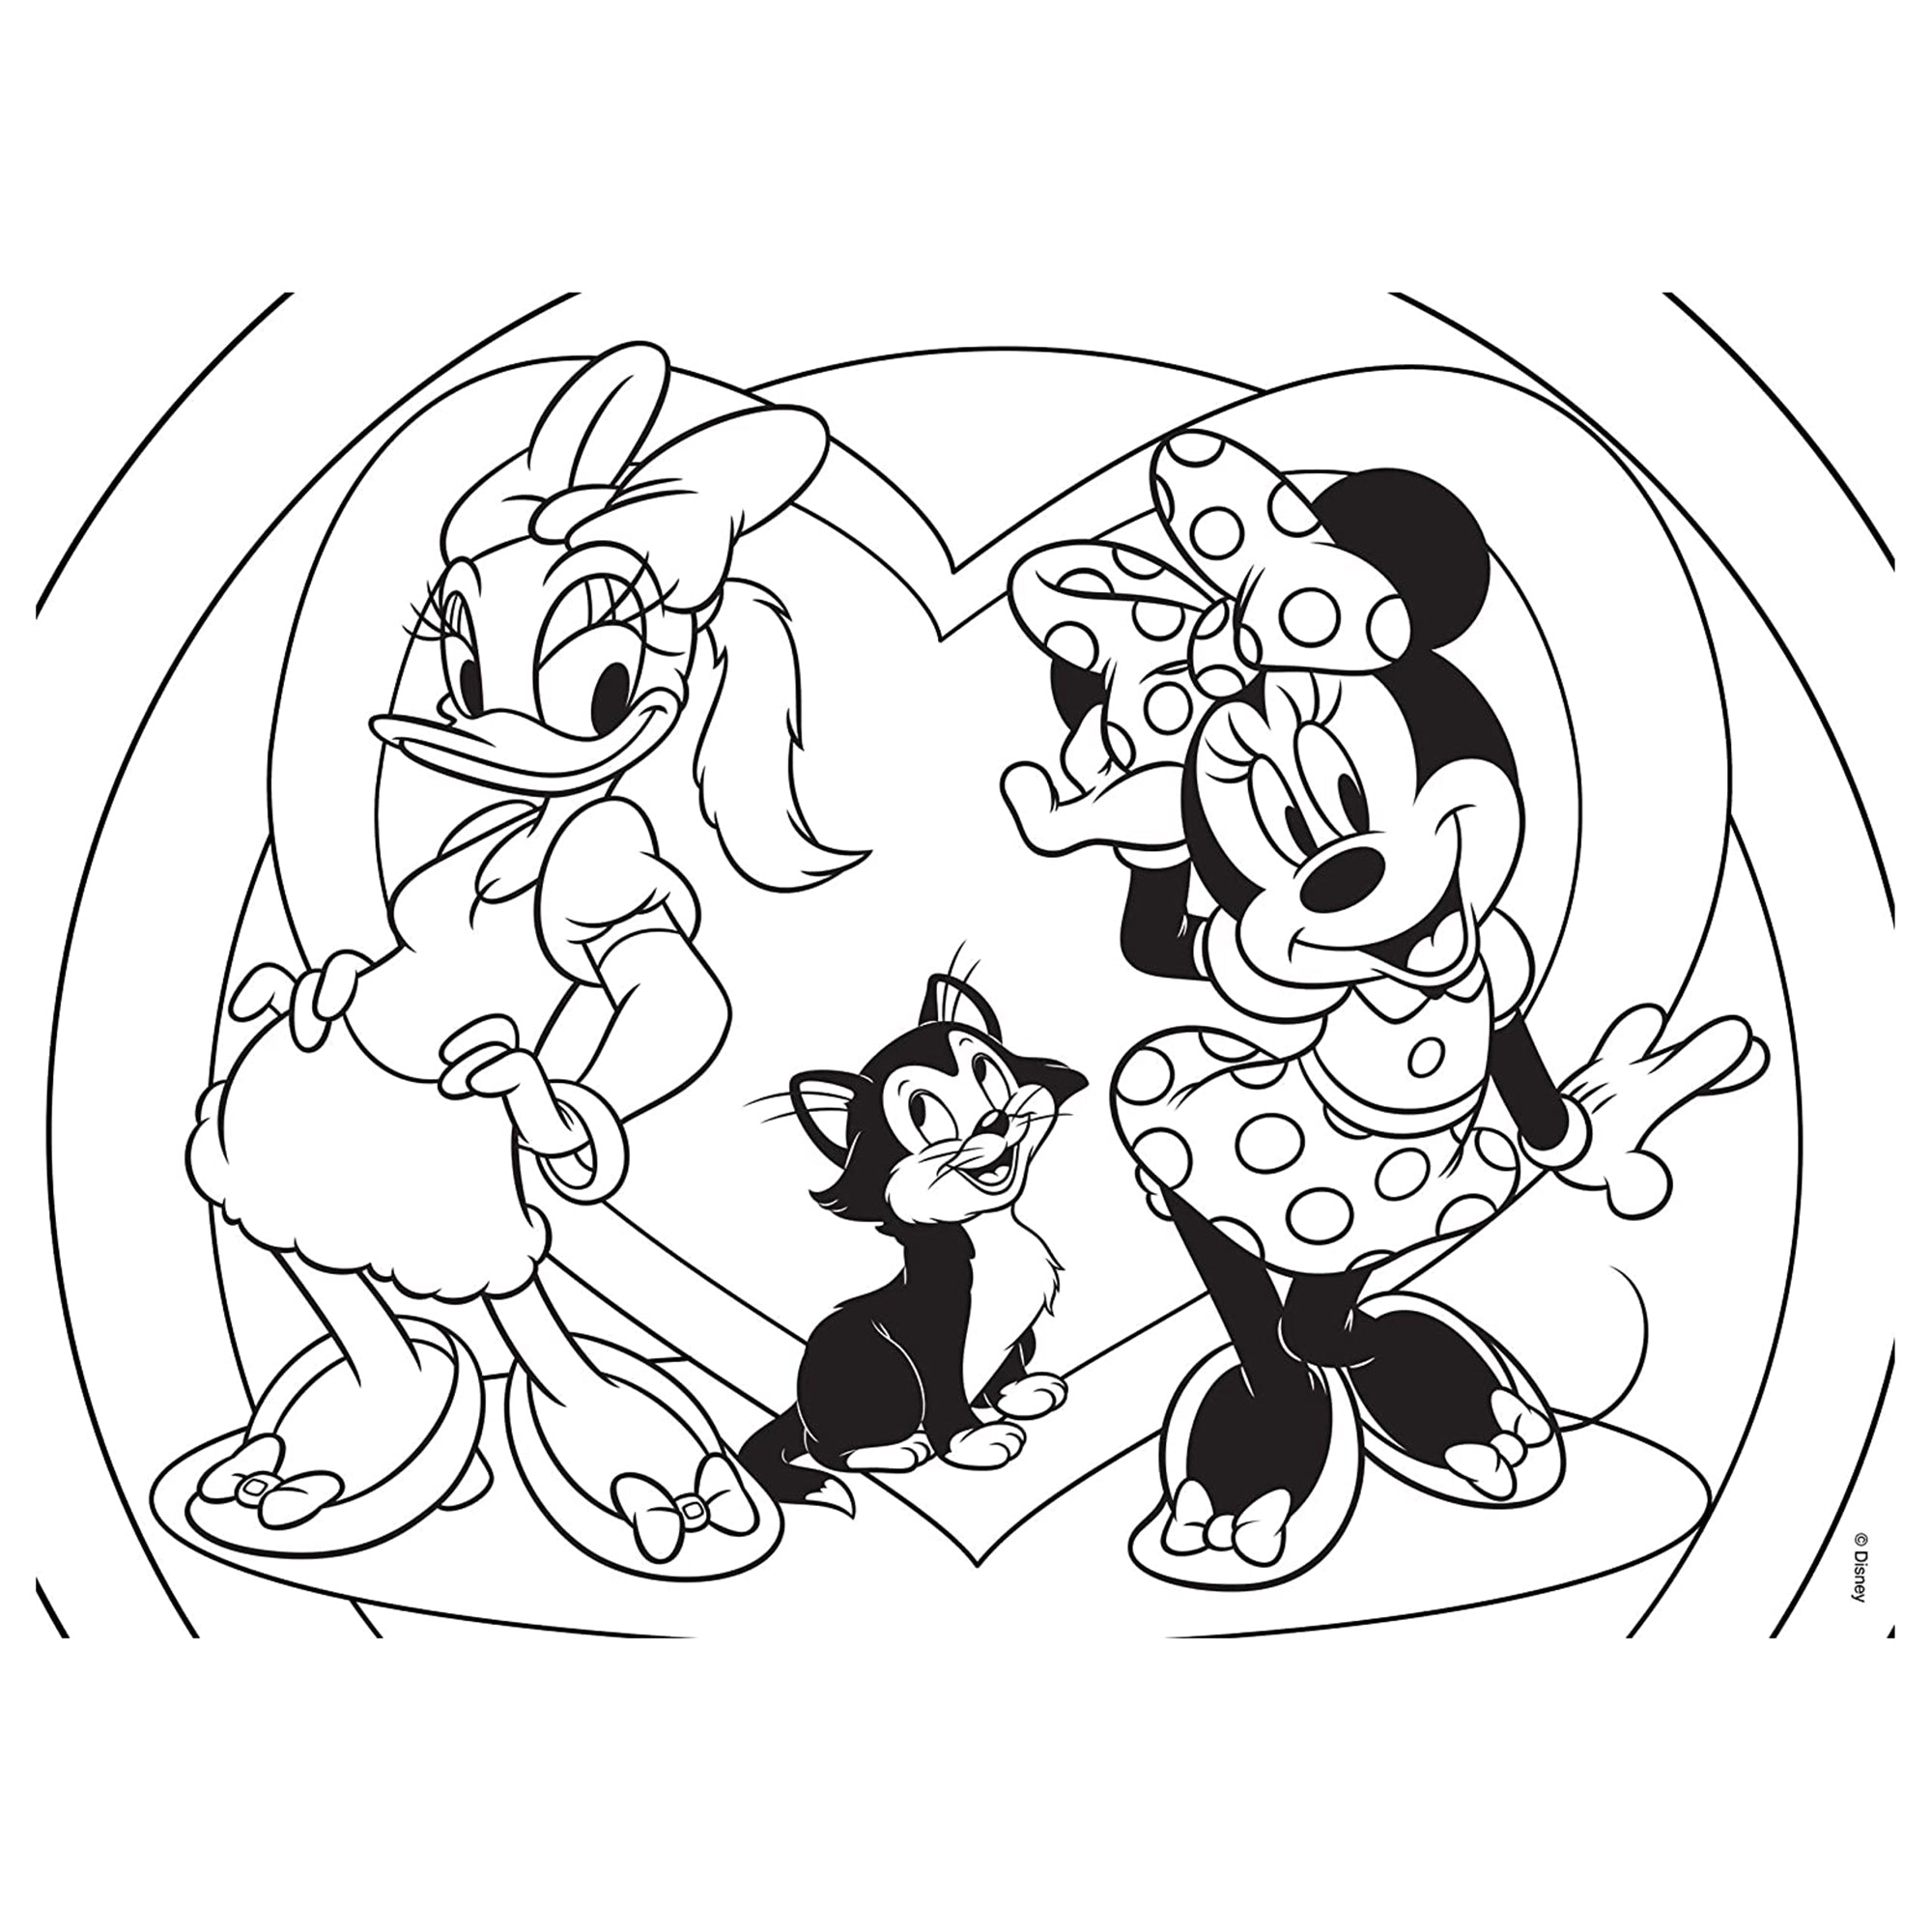 Puzzle maxi double-face Disney Minnie Paperina 108 pz retro colorabile 3362